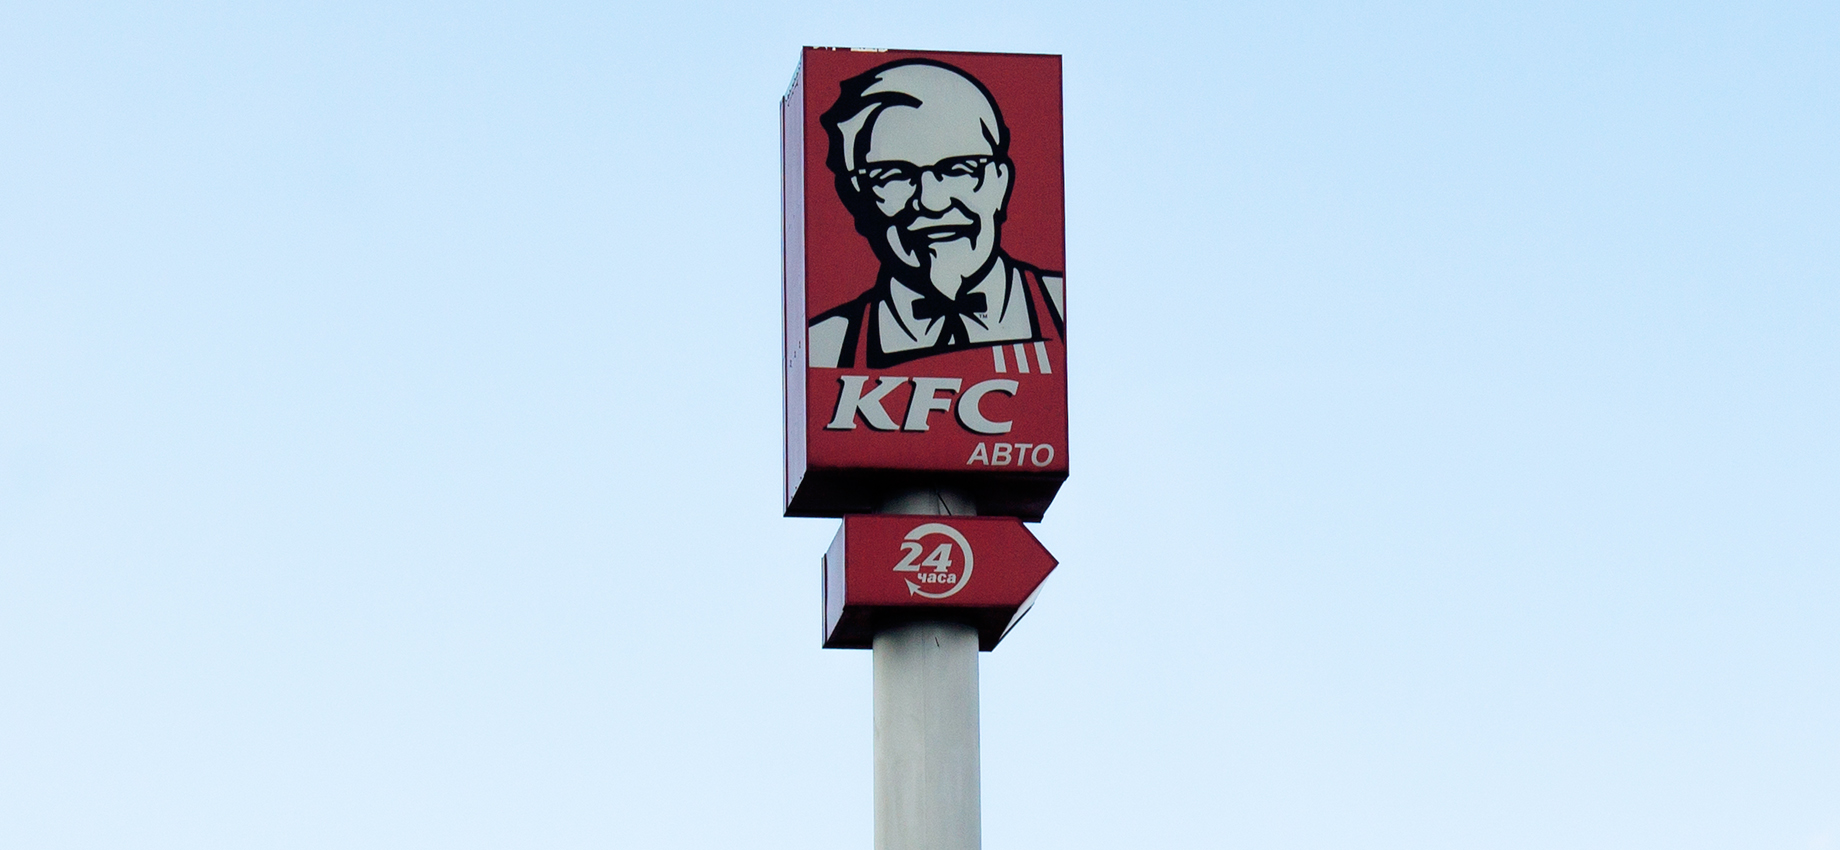 Владелец KFC продаст рестораны в России франчайзи из Ижевска: что известно о сделке